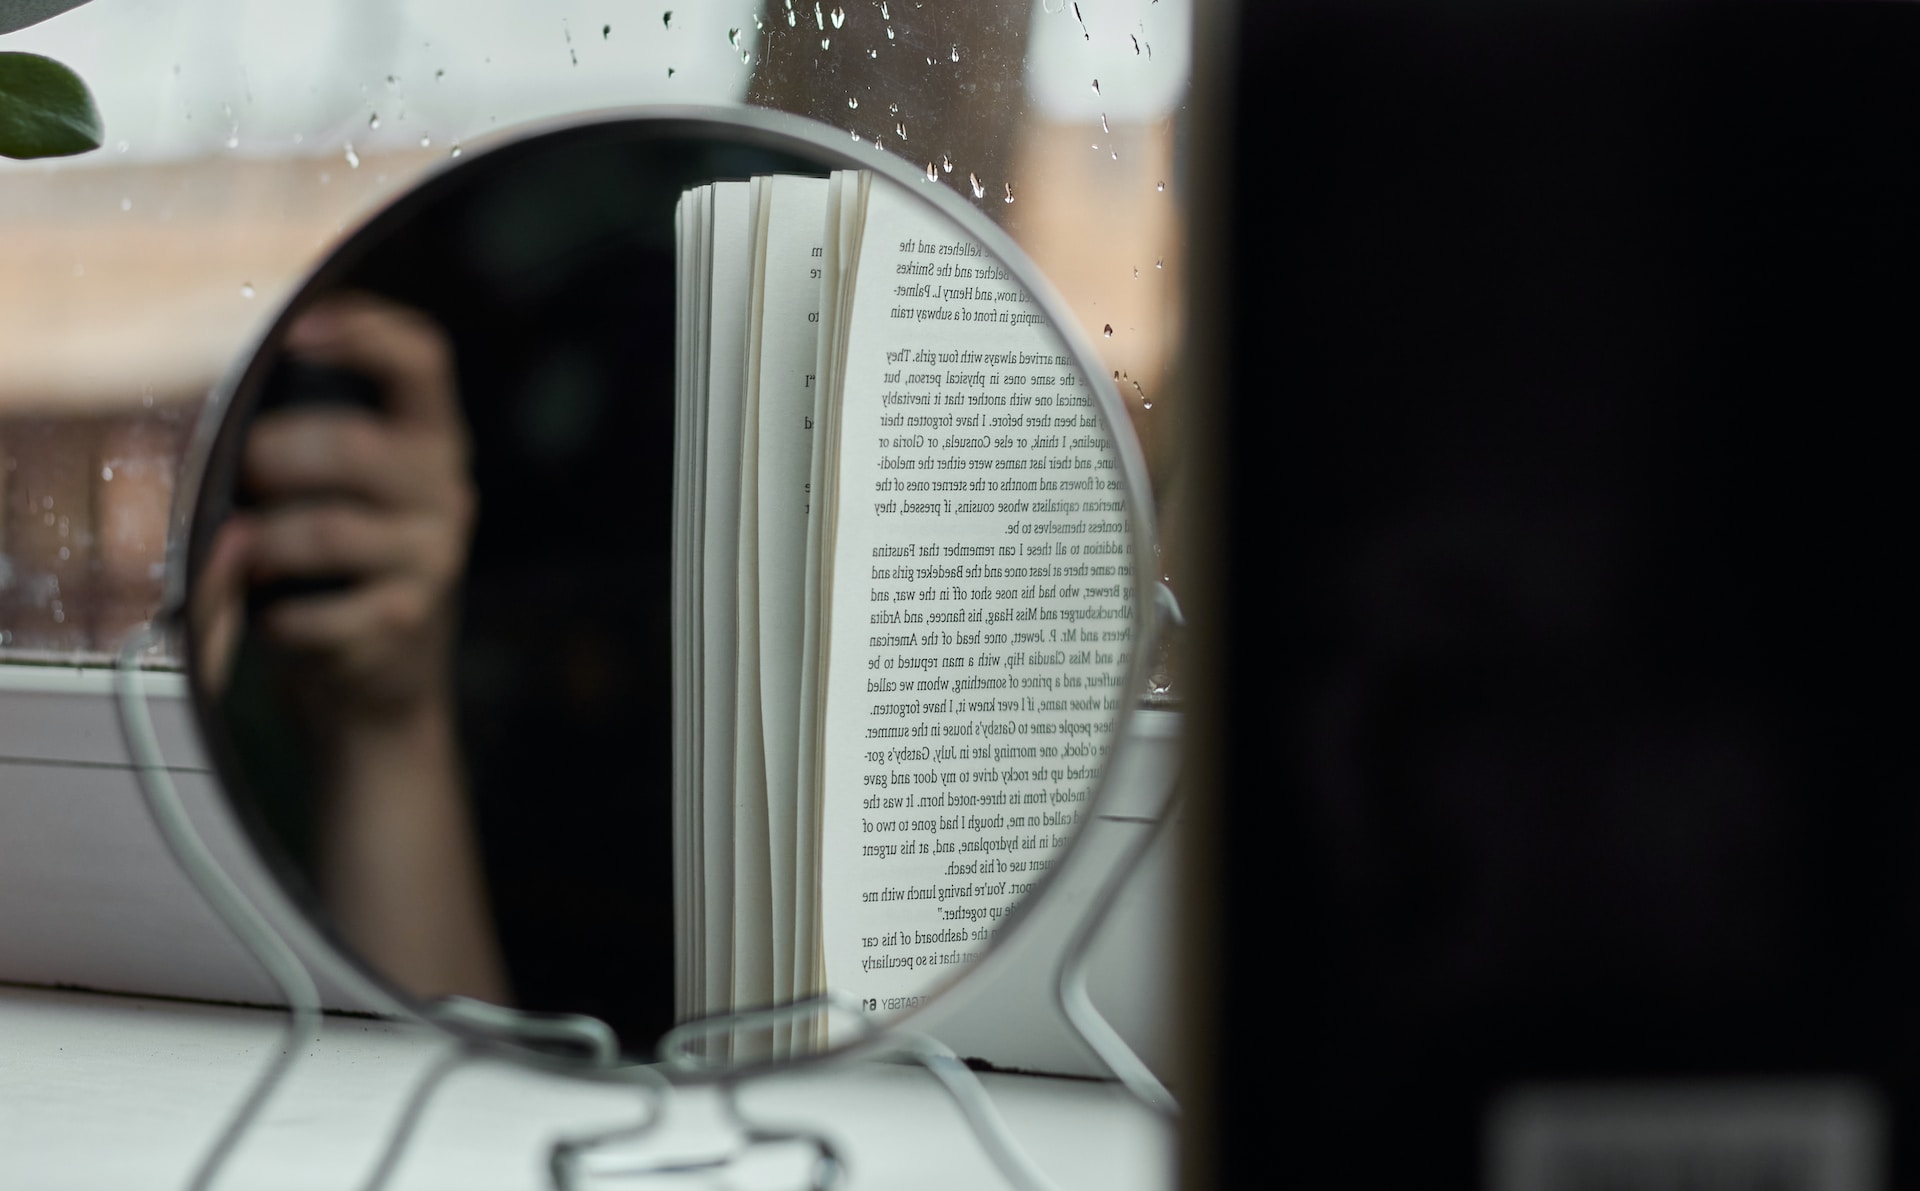 Reflet d'une main et d'un livre dans un miroir de table.